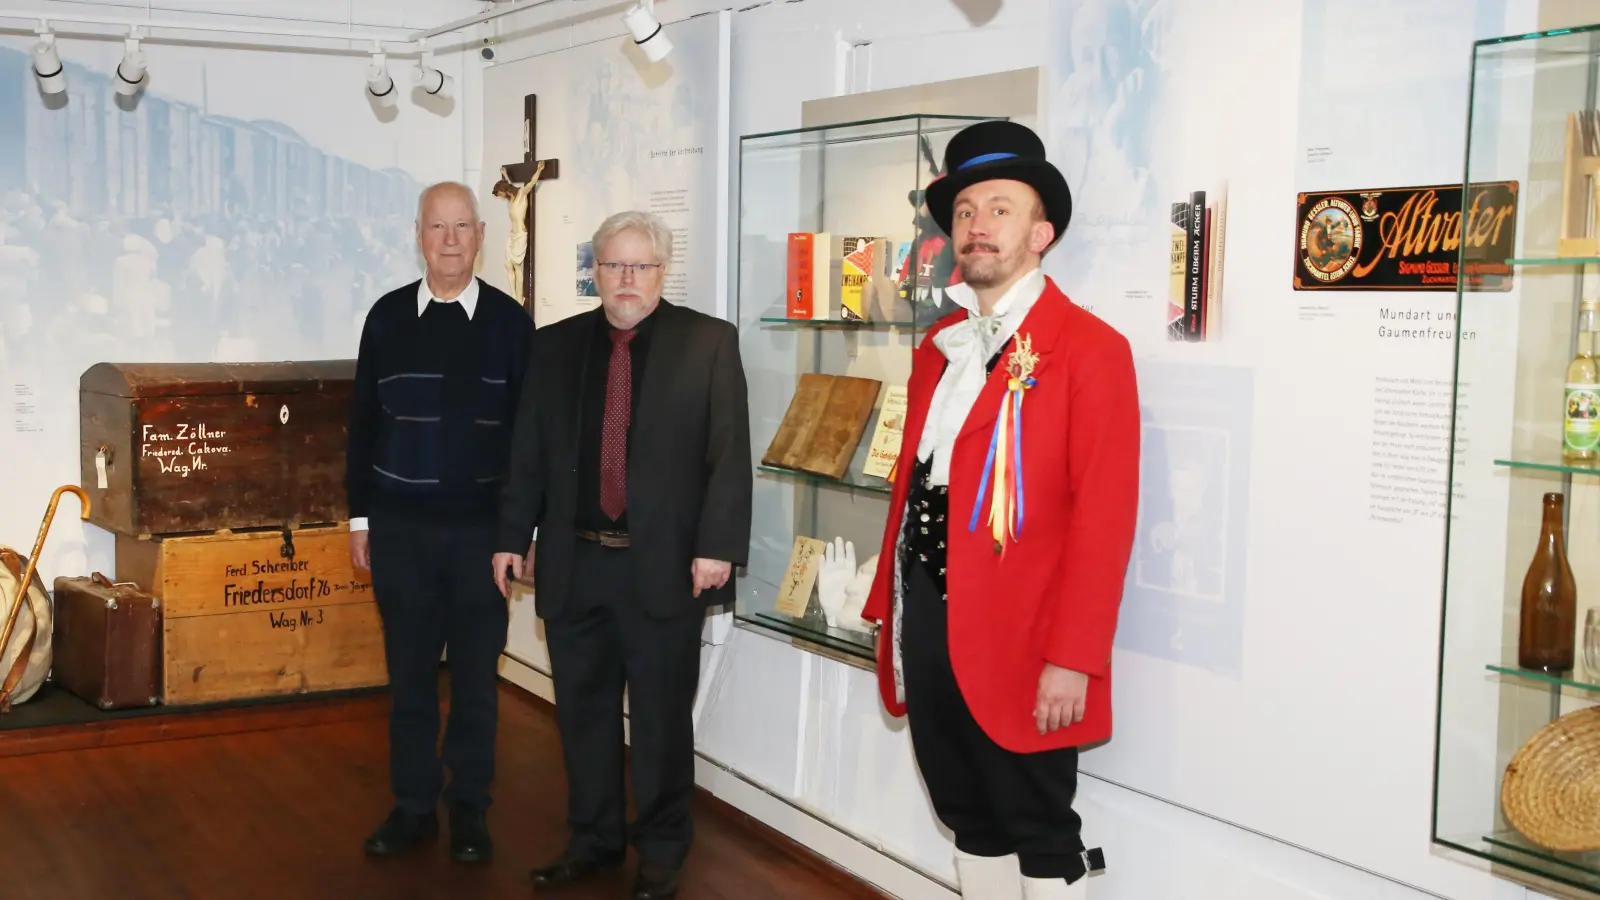 Sie präsentierten die neue Jägerndorf-Abteilung im Markgrafenmuseum (von links): Diether Ertel, Dr. Wolfgang Reddig und Lorenz Justin Loserth in einer südschlesischen Tracht. (Foto: Alexander Biernoth)